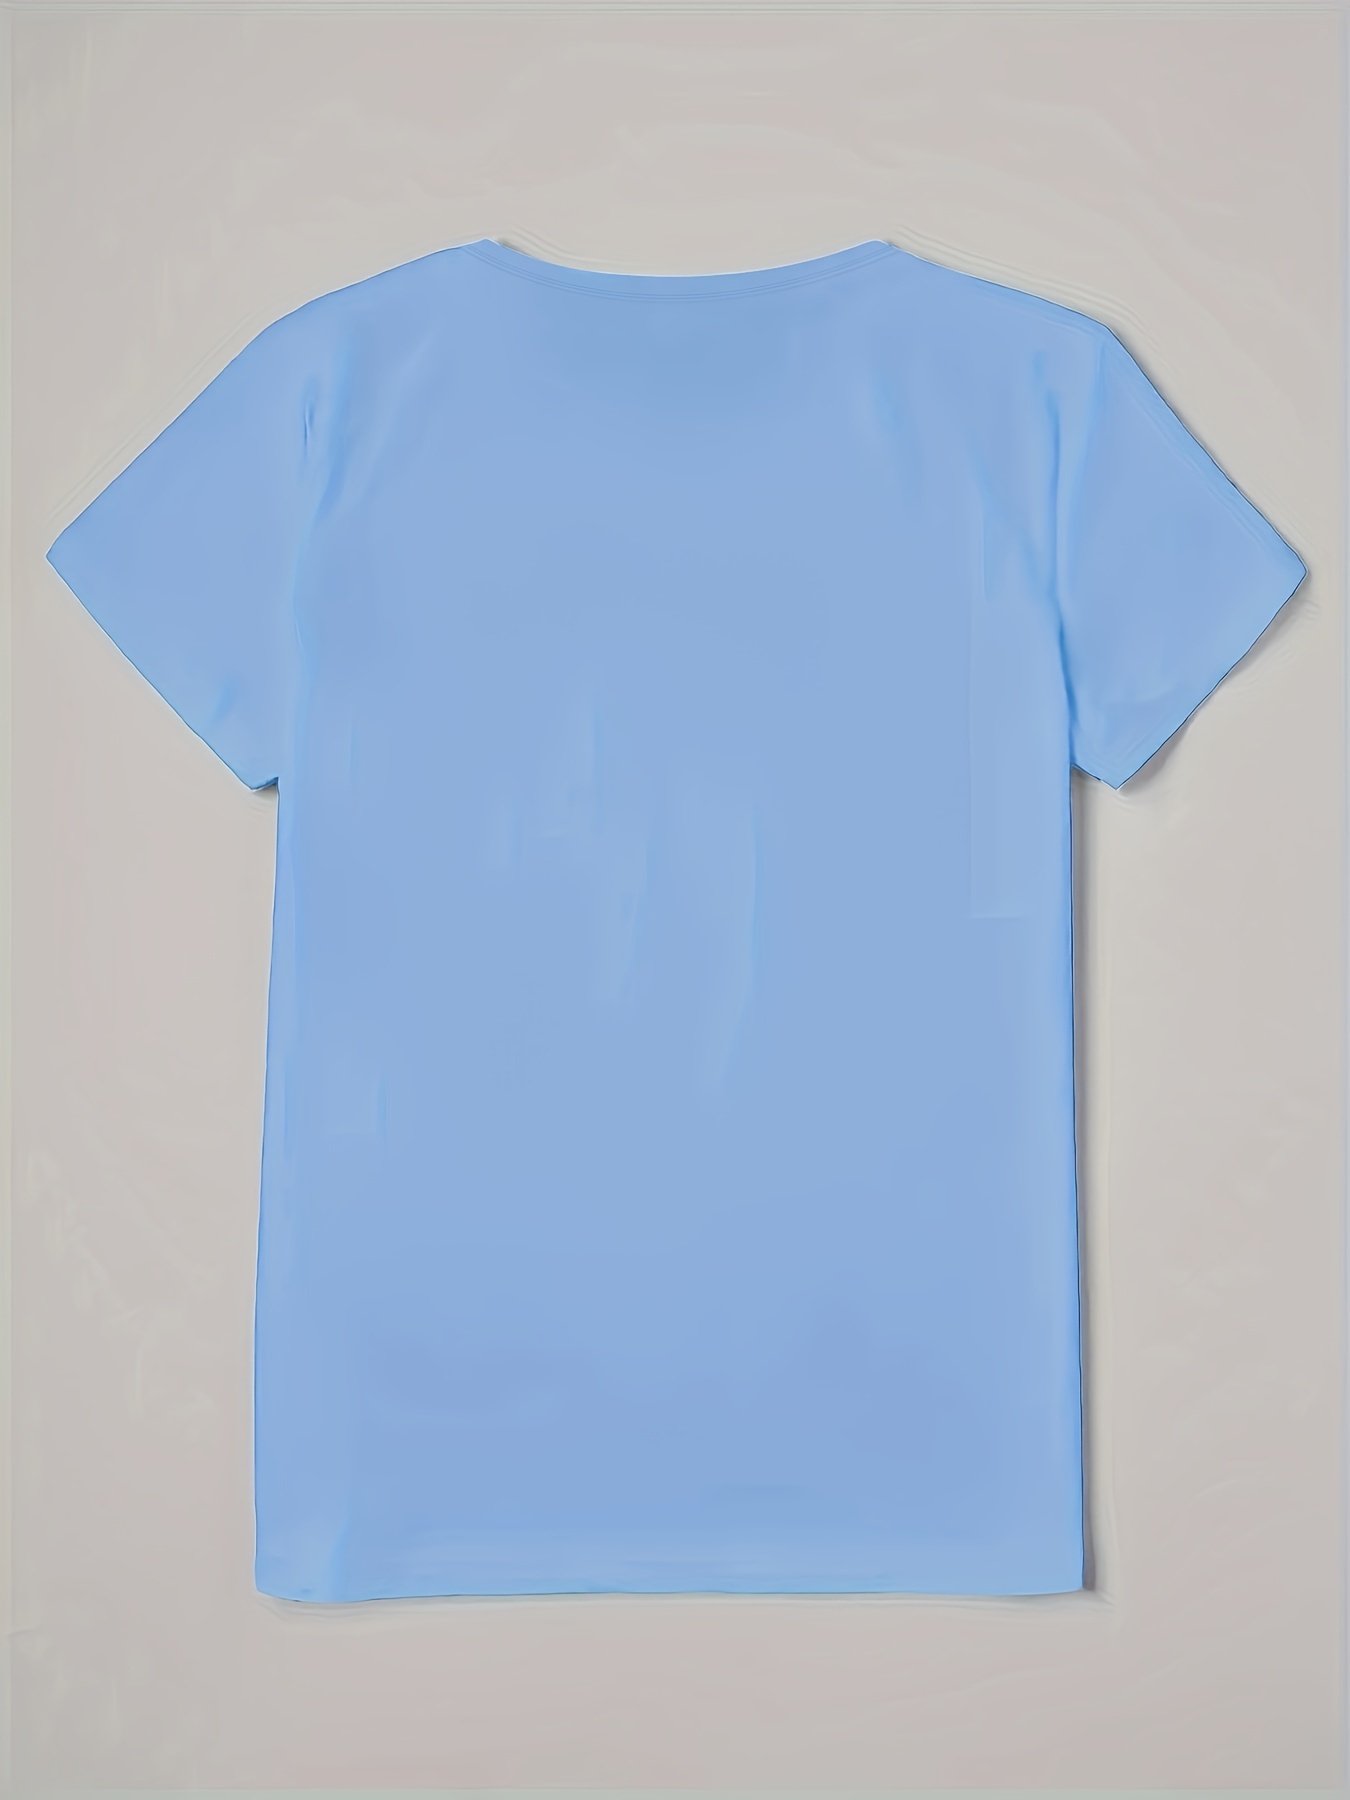 Camiseta T-Shirt Feminina Azul Estampa Love Coração